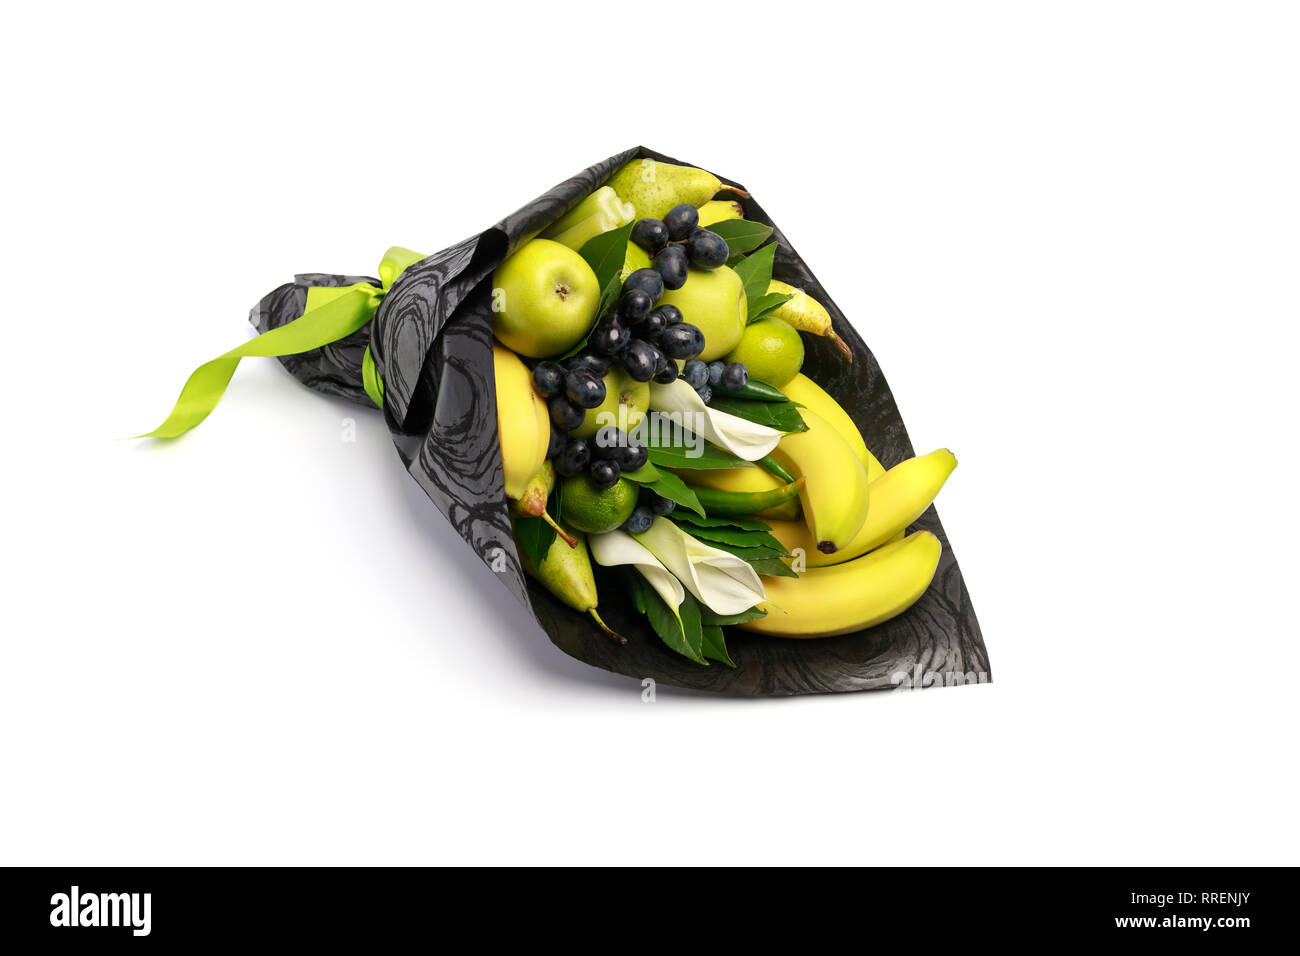 Insolito bouquet commestibile costituito di banane, pere, mele, calce e uve nere su sfondo bianco Foto Stock